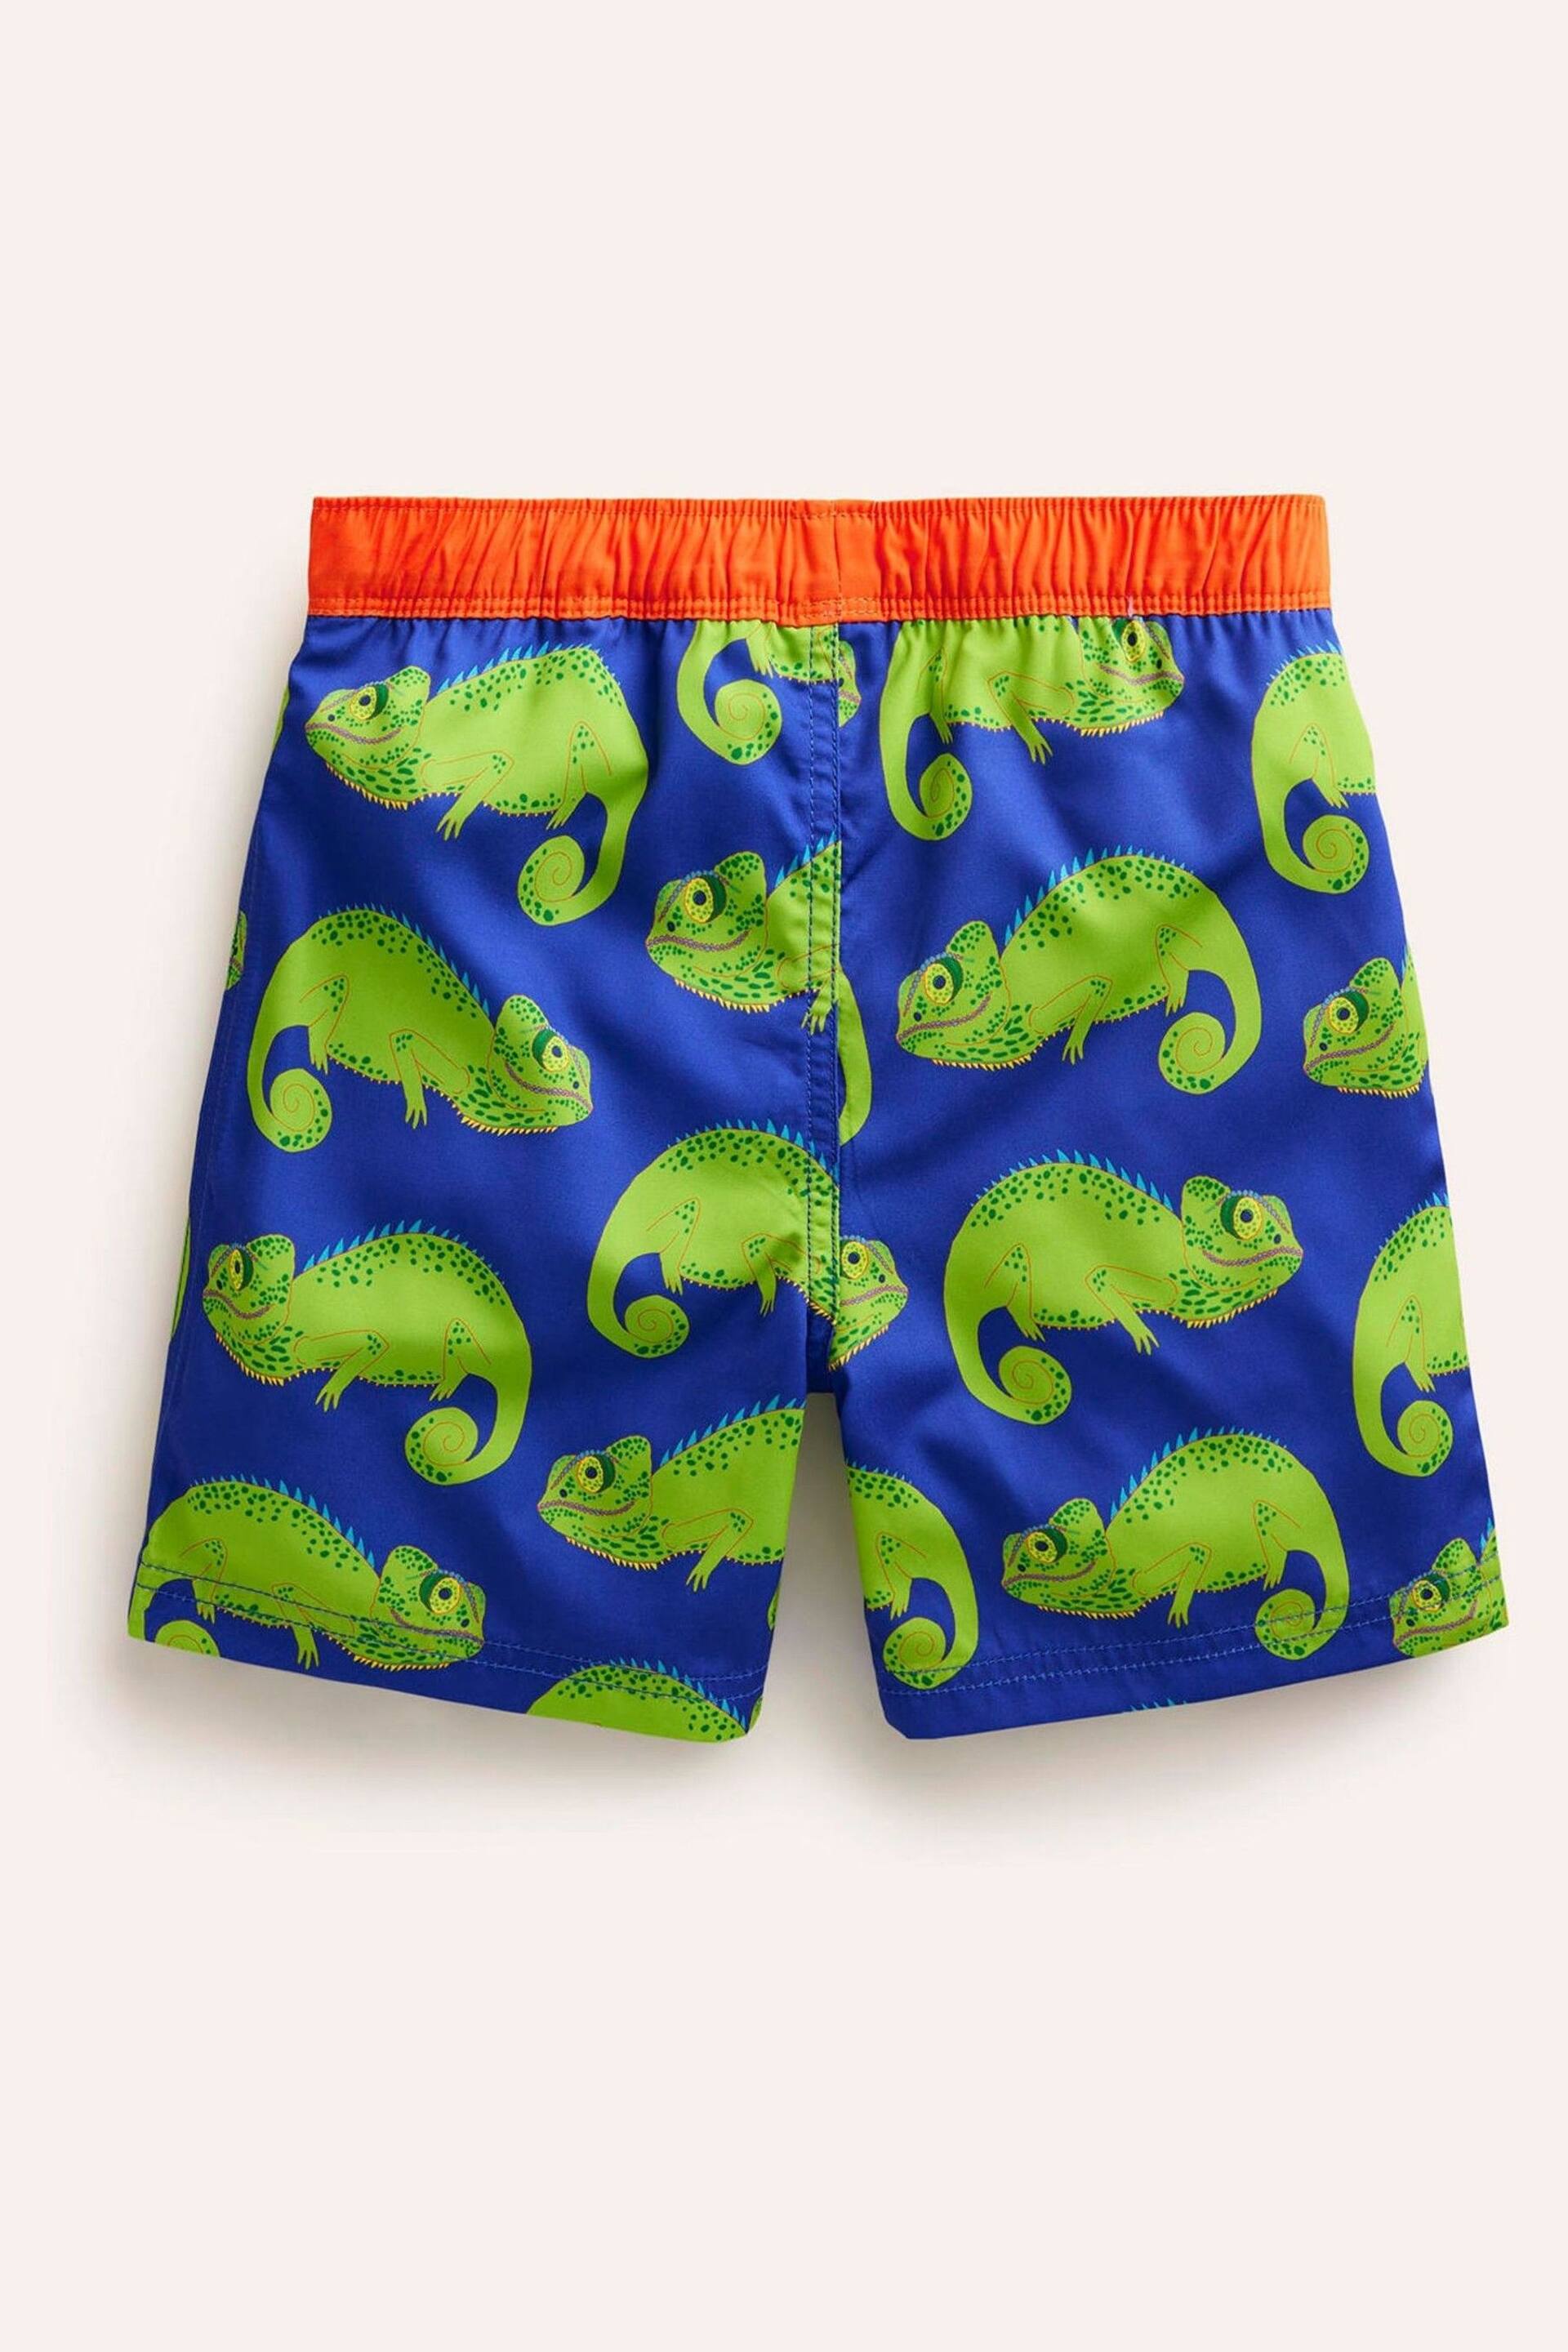 Boden Blue Chameleon Swim Shorts - Image 2 of 3